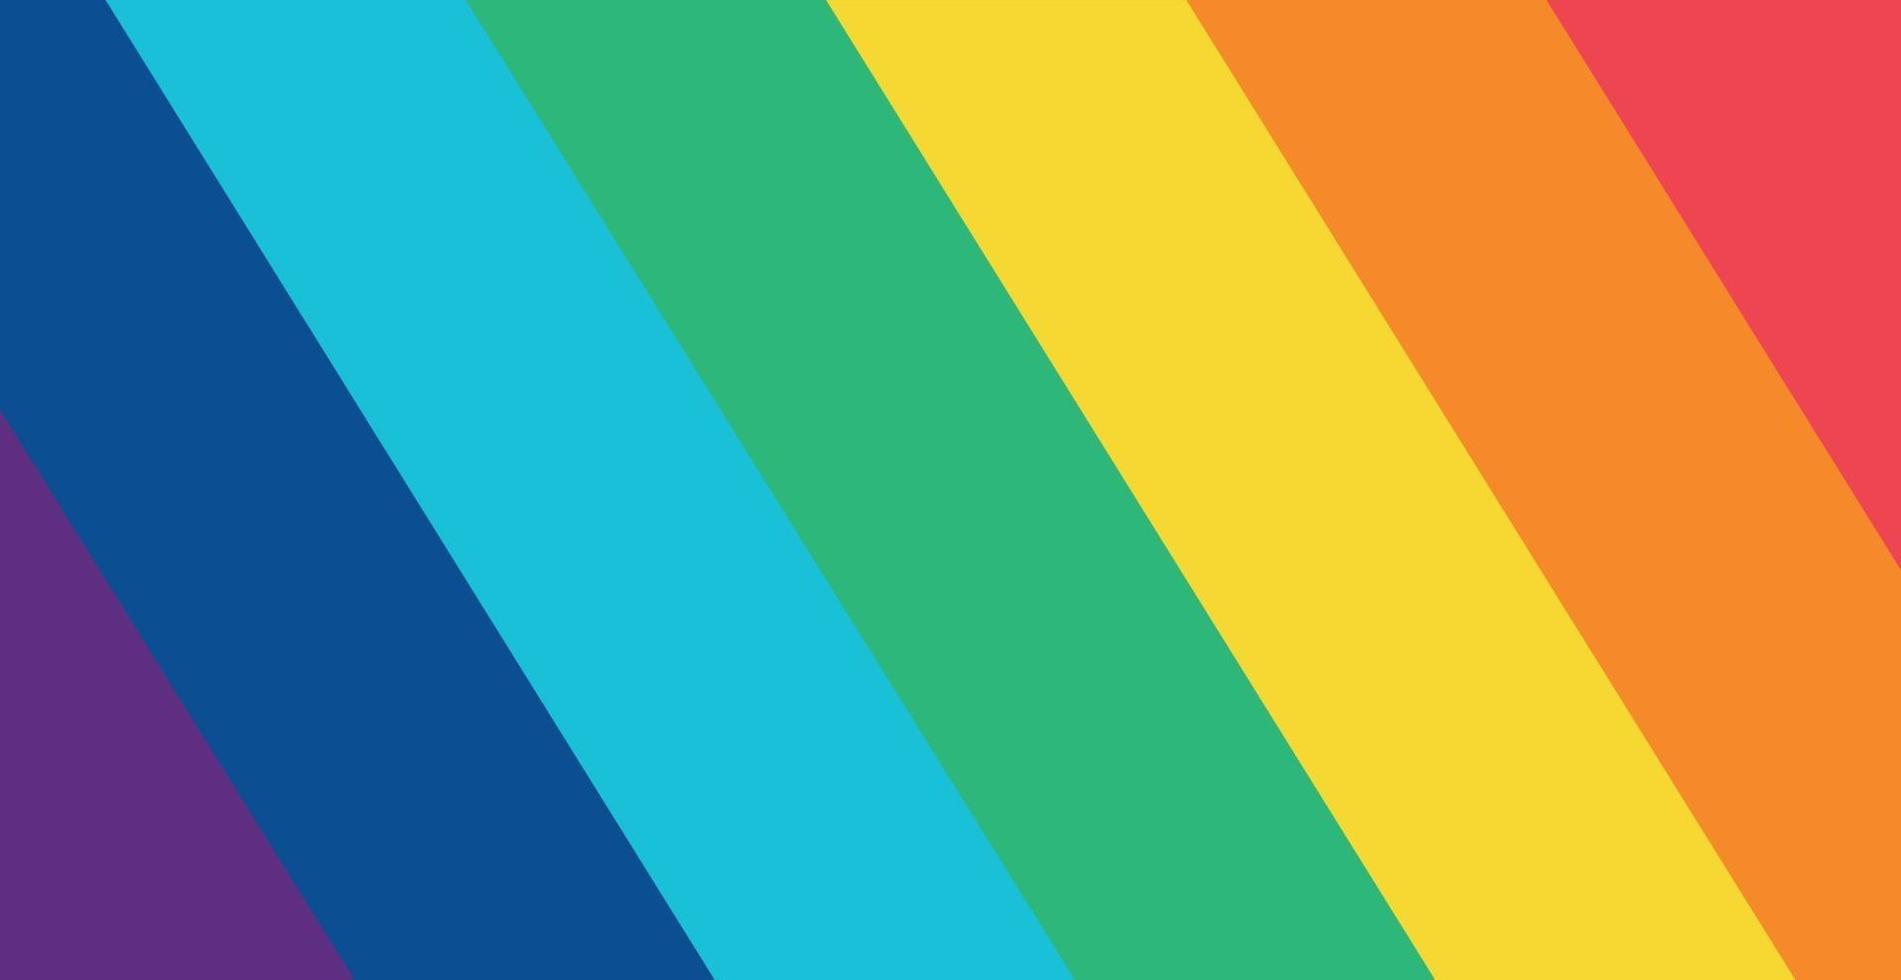 Colores del arco iris multicolor abstracto, 7 tonos - ilustración vectorial vector